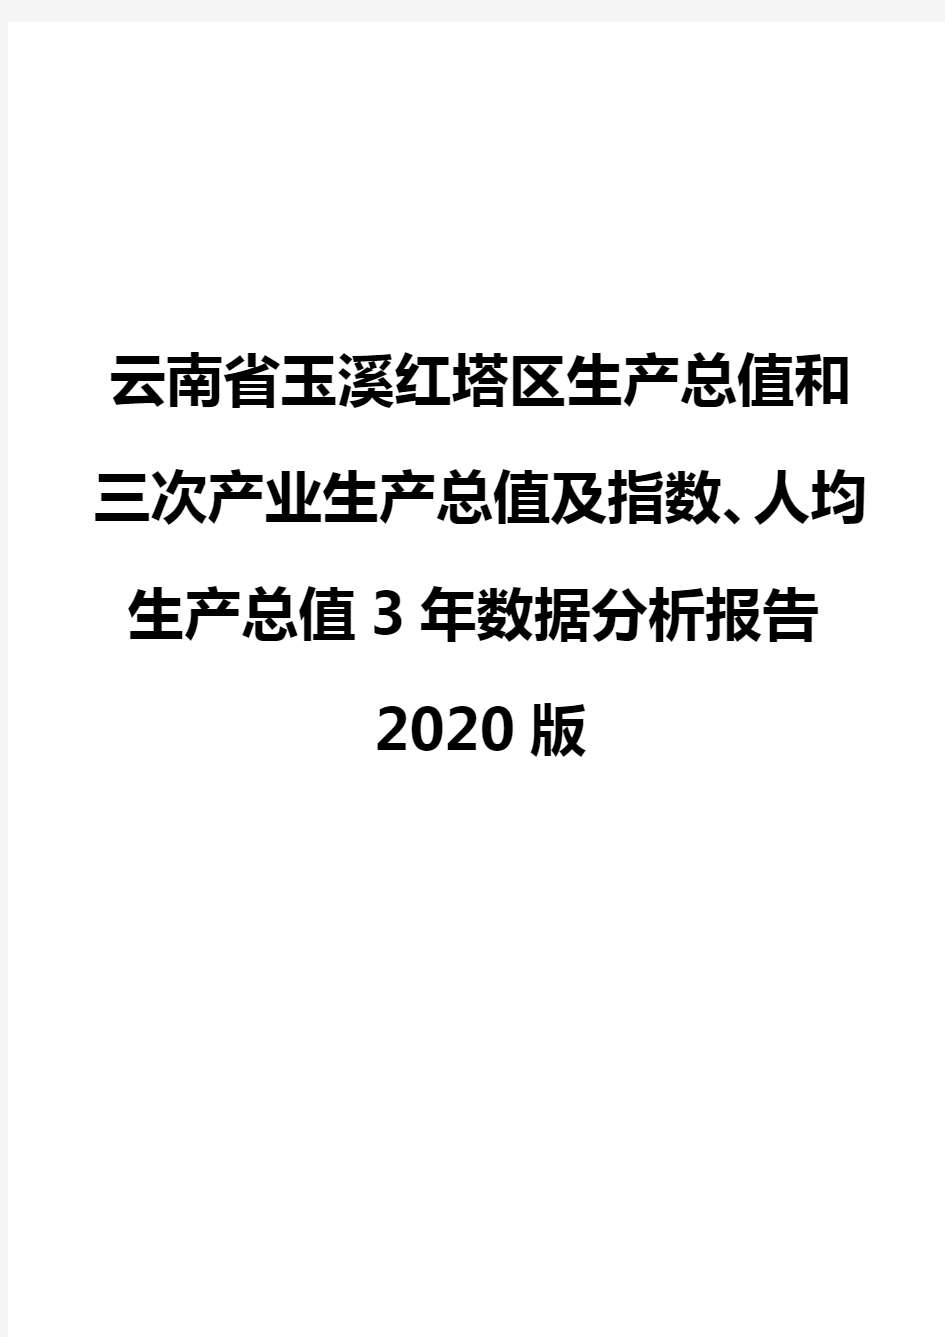 云南省玉溪红塔区生产总值和三次产业生产总值及指数、人均生产总值3年数据分析报告2020版